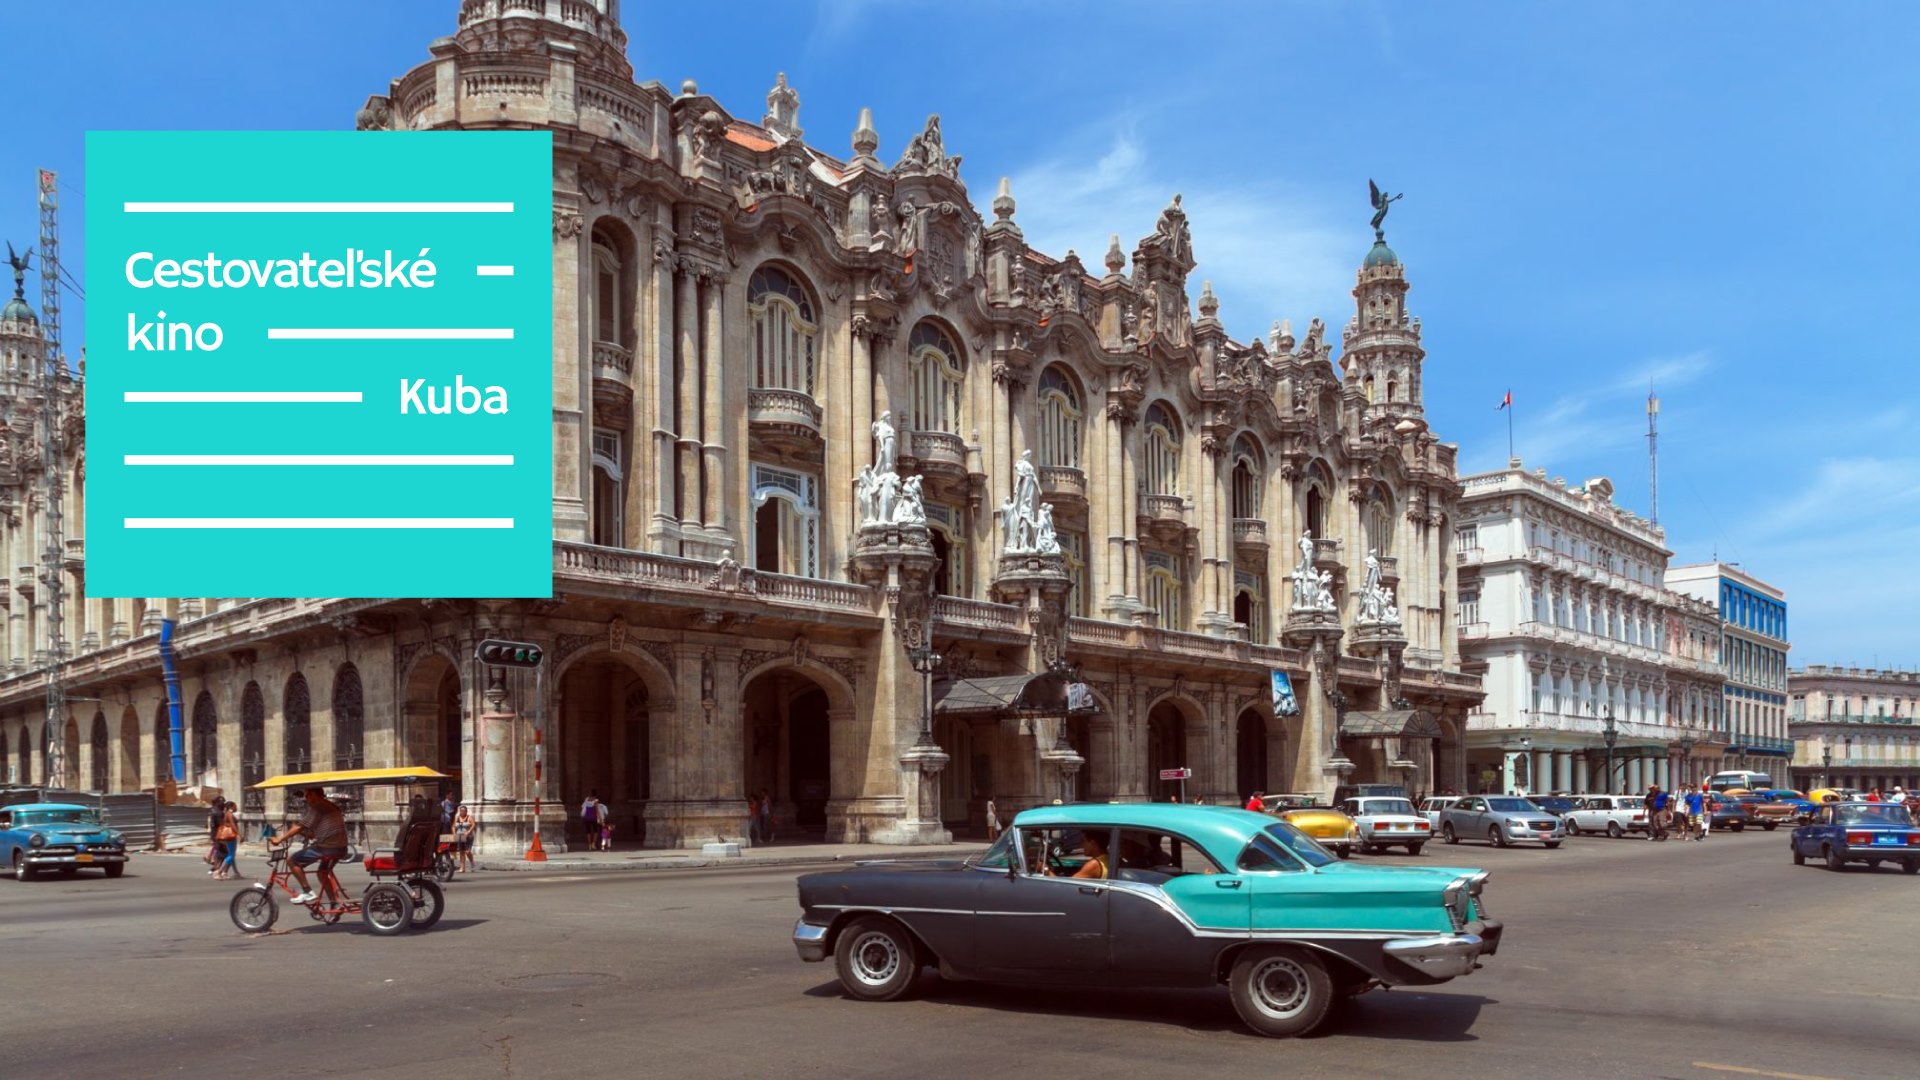 Cestovateľské kino: Kuba | KC Dunaj~